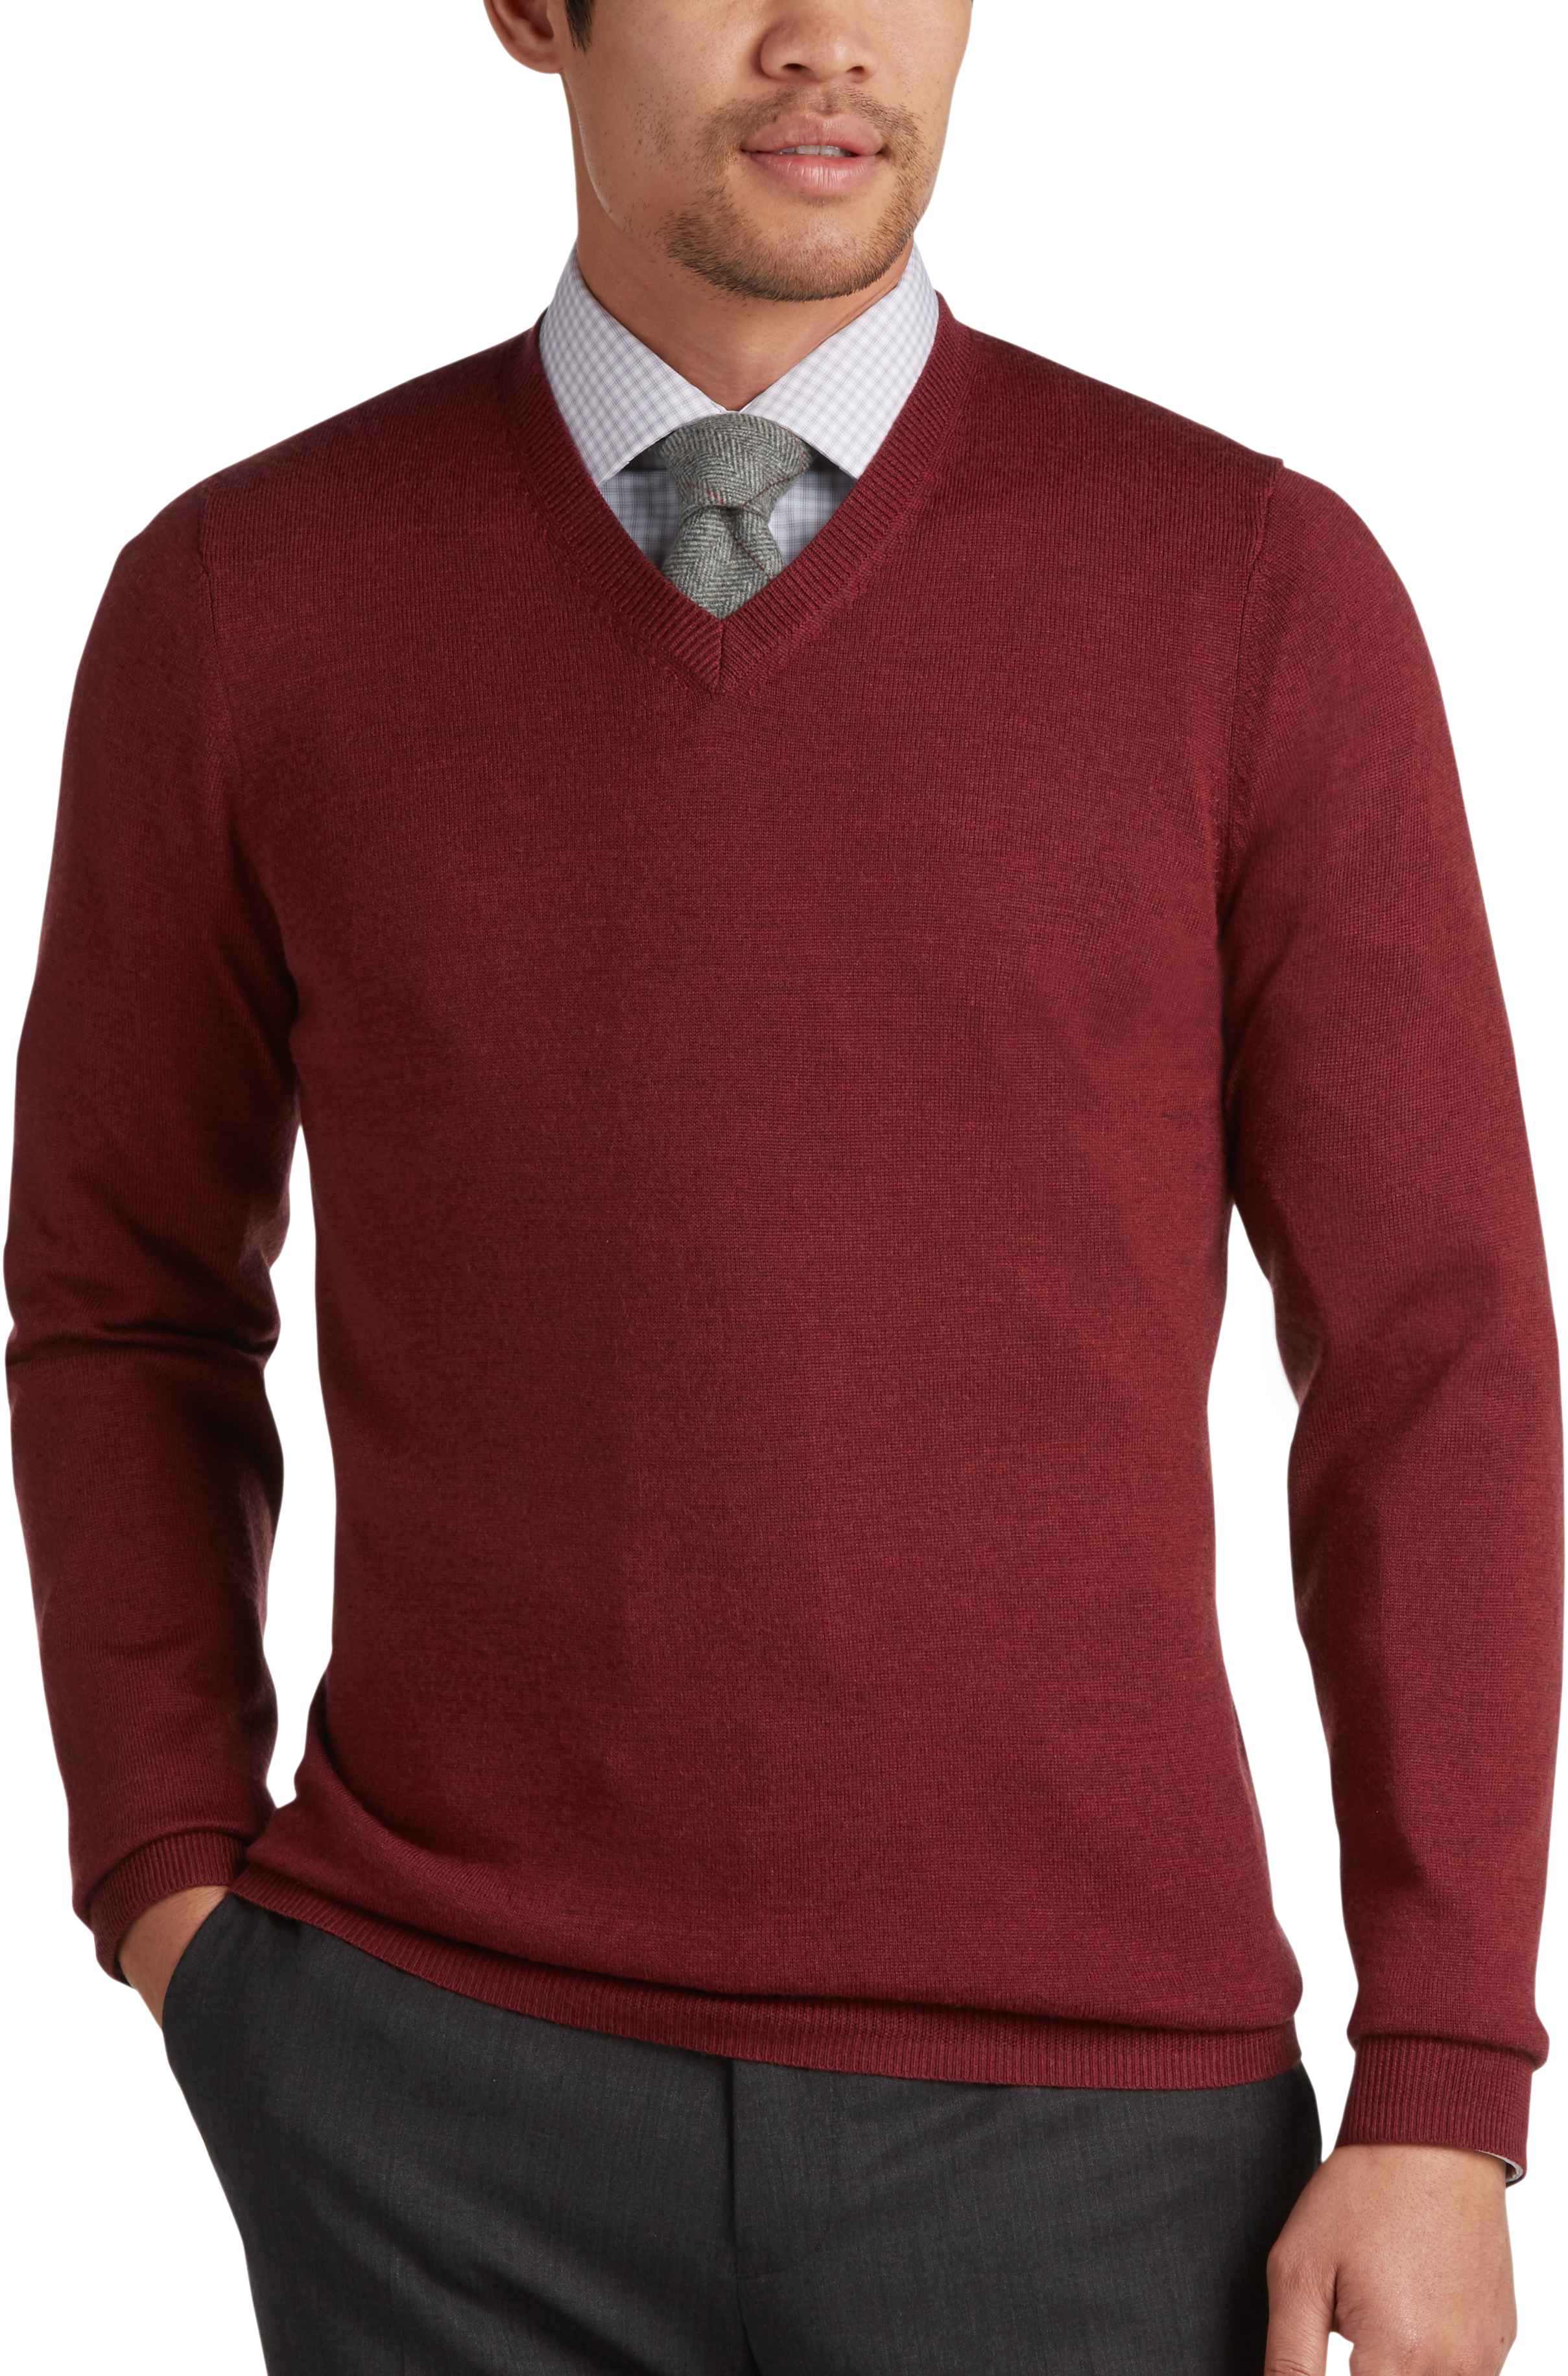 Sweaters - Men's Clothing | Men's Wearhouse